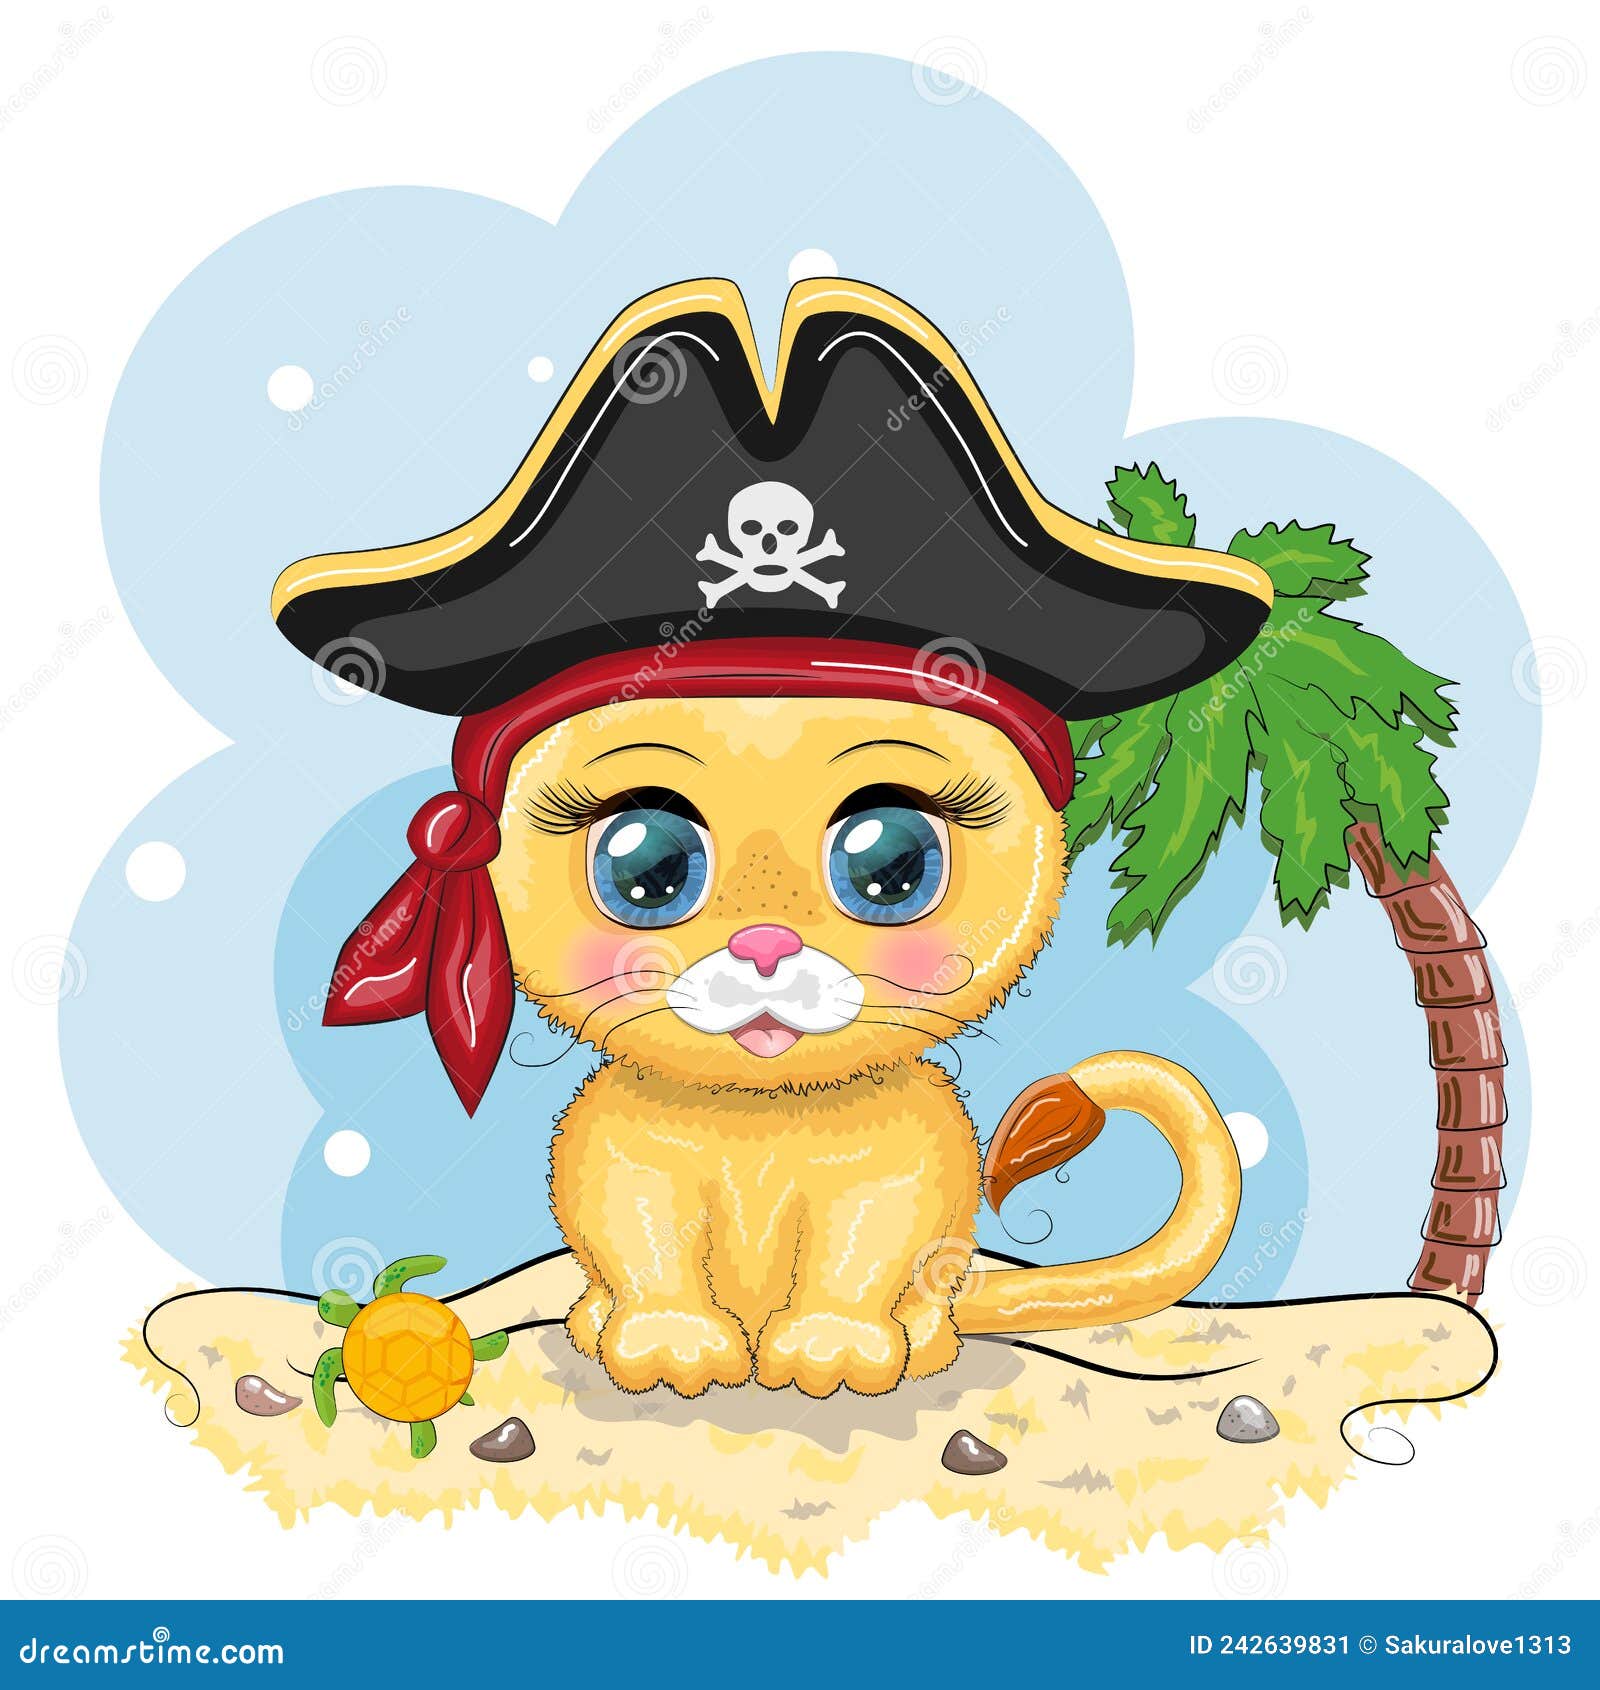 Desenho de Gato com bandana pintado e colorido por Usuário não